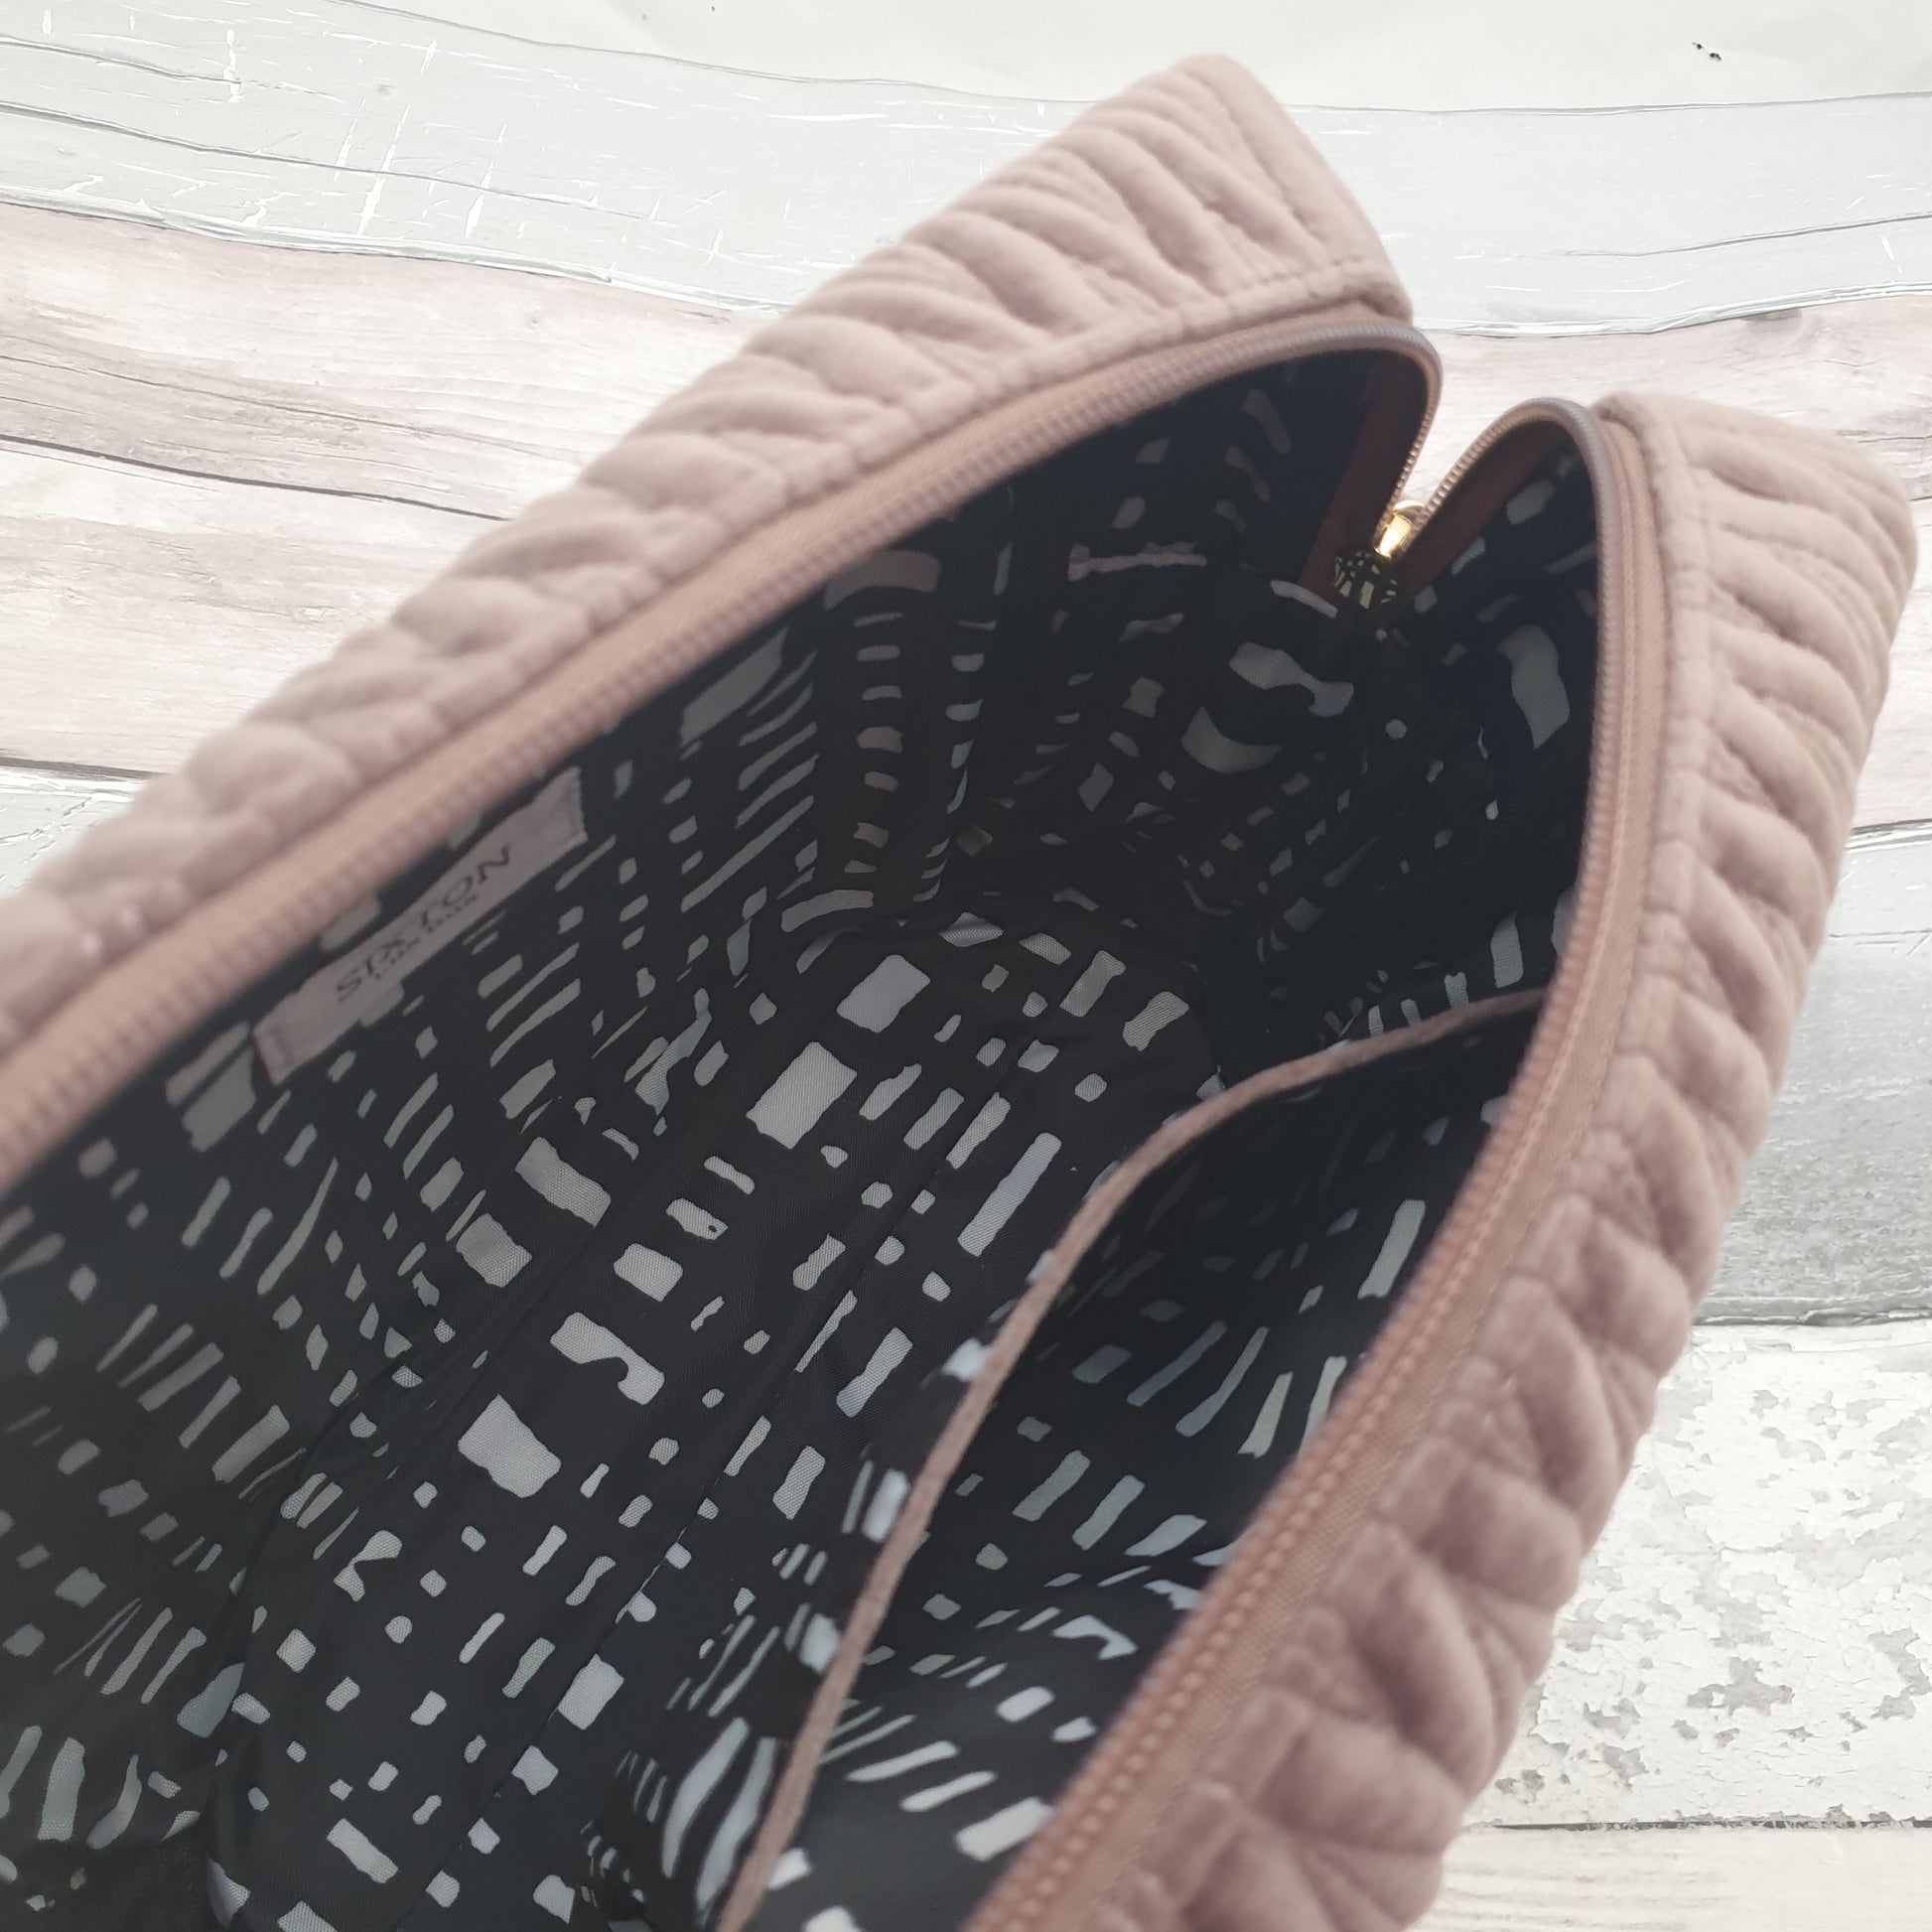 Lingerie Wash Bag – Velvet Quarters